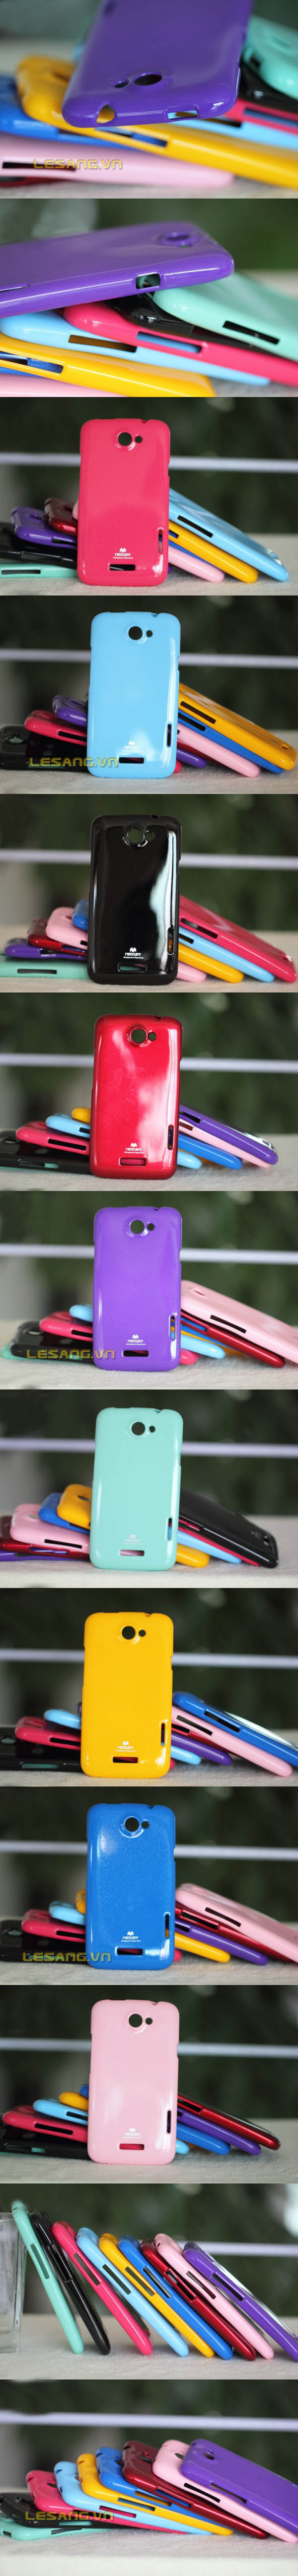 Ốp lưng HTC One X, One X+ Mercury nhựa dẻo Silicon thời trang - 3